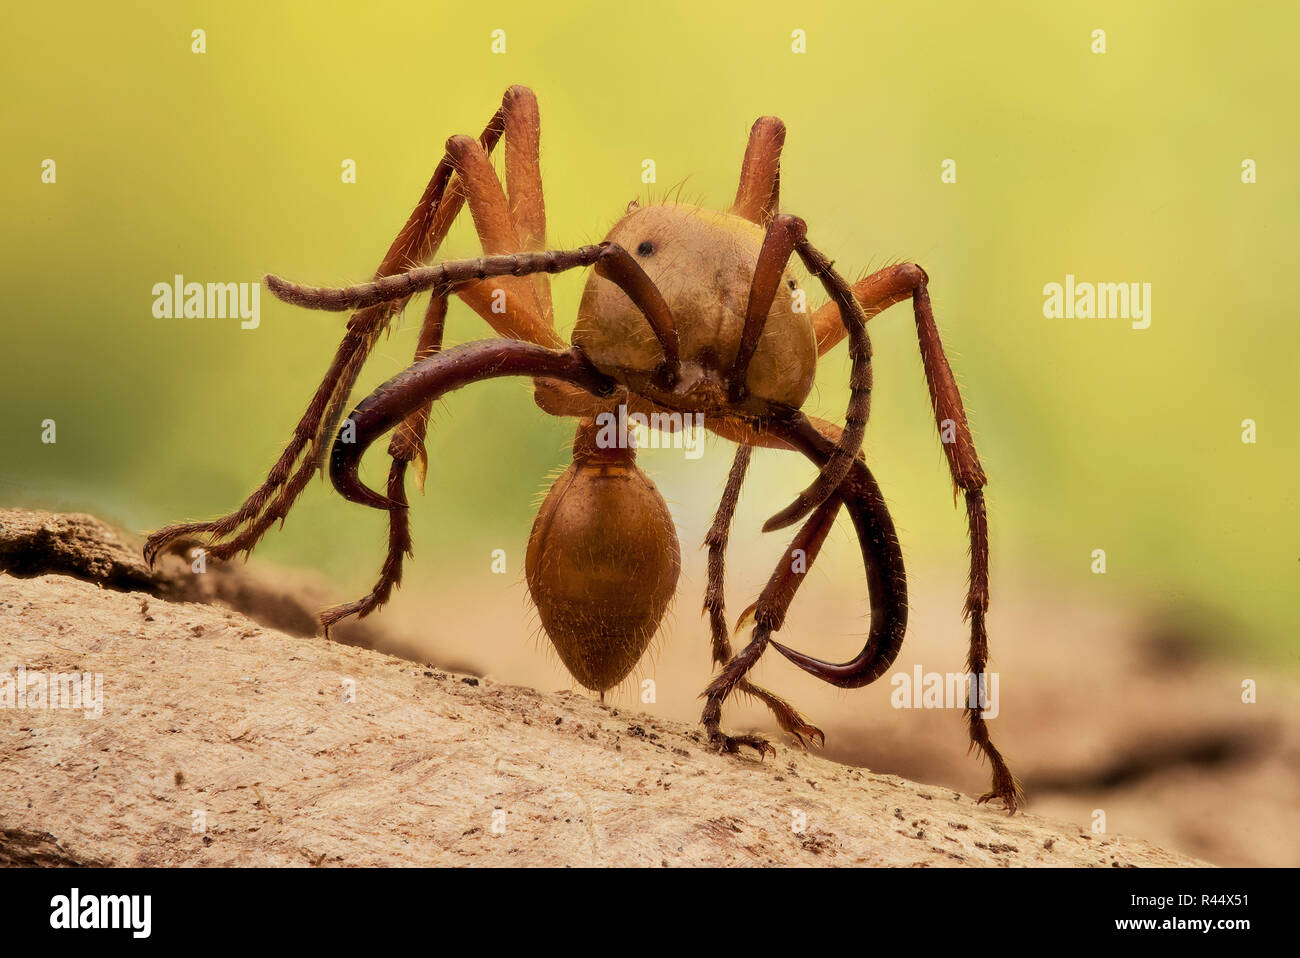 Army ant - Ection - Marabunta Stock Photo